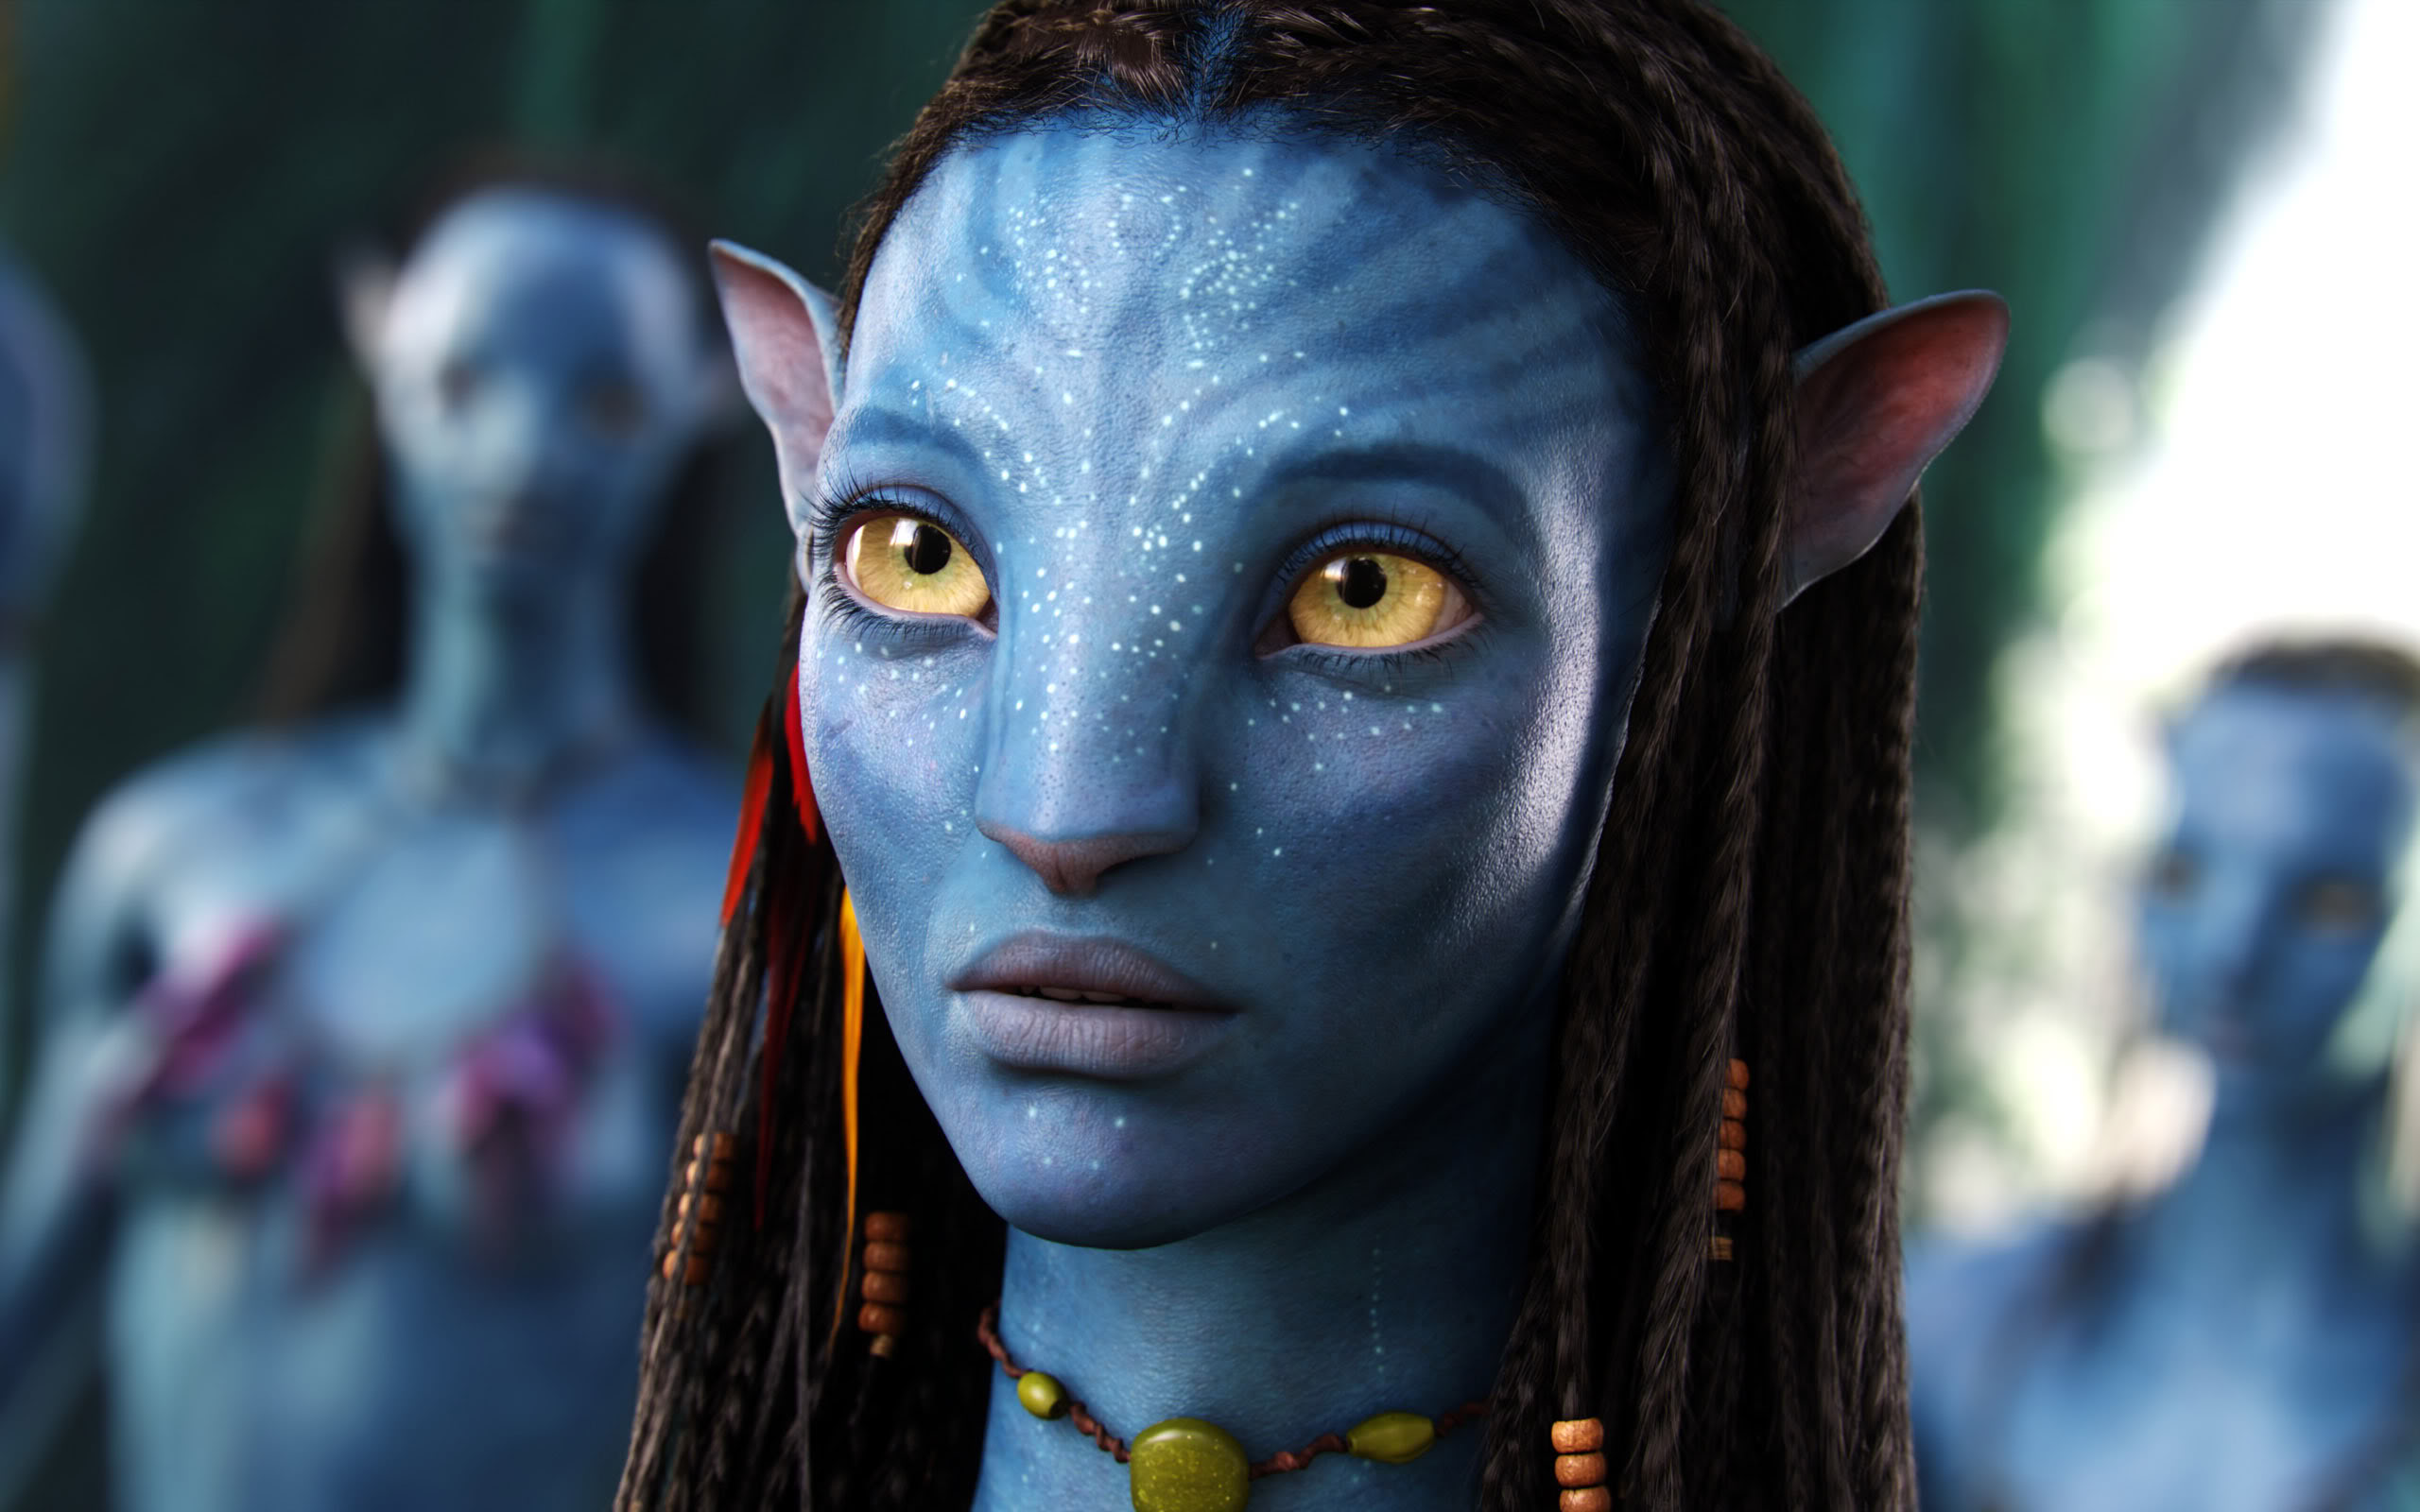 Avatar girl - Top 99+: Avatar girl đã chiếm vị trí top 99+ trong danh sách phụ nữ đẹp nhất thế giới năm 2024, nhờ vào sự nổi tiếng và tài năng của mình trong bộ phim Avatar. Với vẻ ngoài quyến rũ và khả năng diễn xuất xuất sắc, cô ấy đã trở thành một biểu tượng nhan sắc được yêu mến. Hãy khám phá hình ảnh của Avatar girl và tận hưởng vẻ đẹp tuyệt vời này.